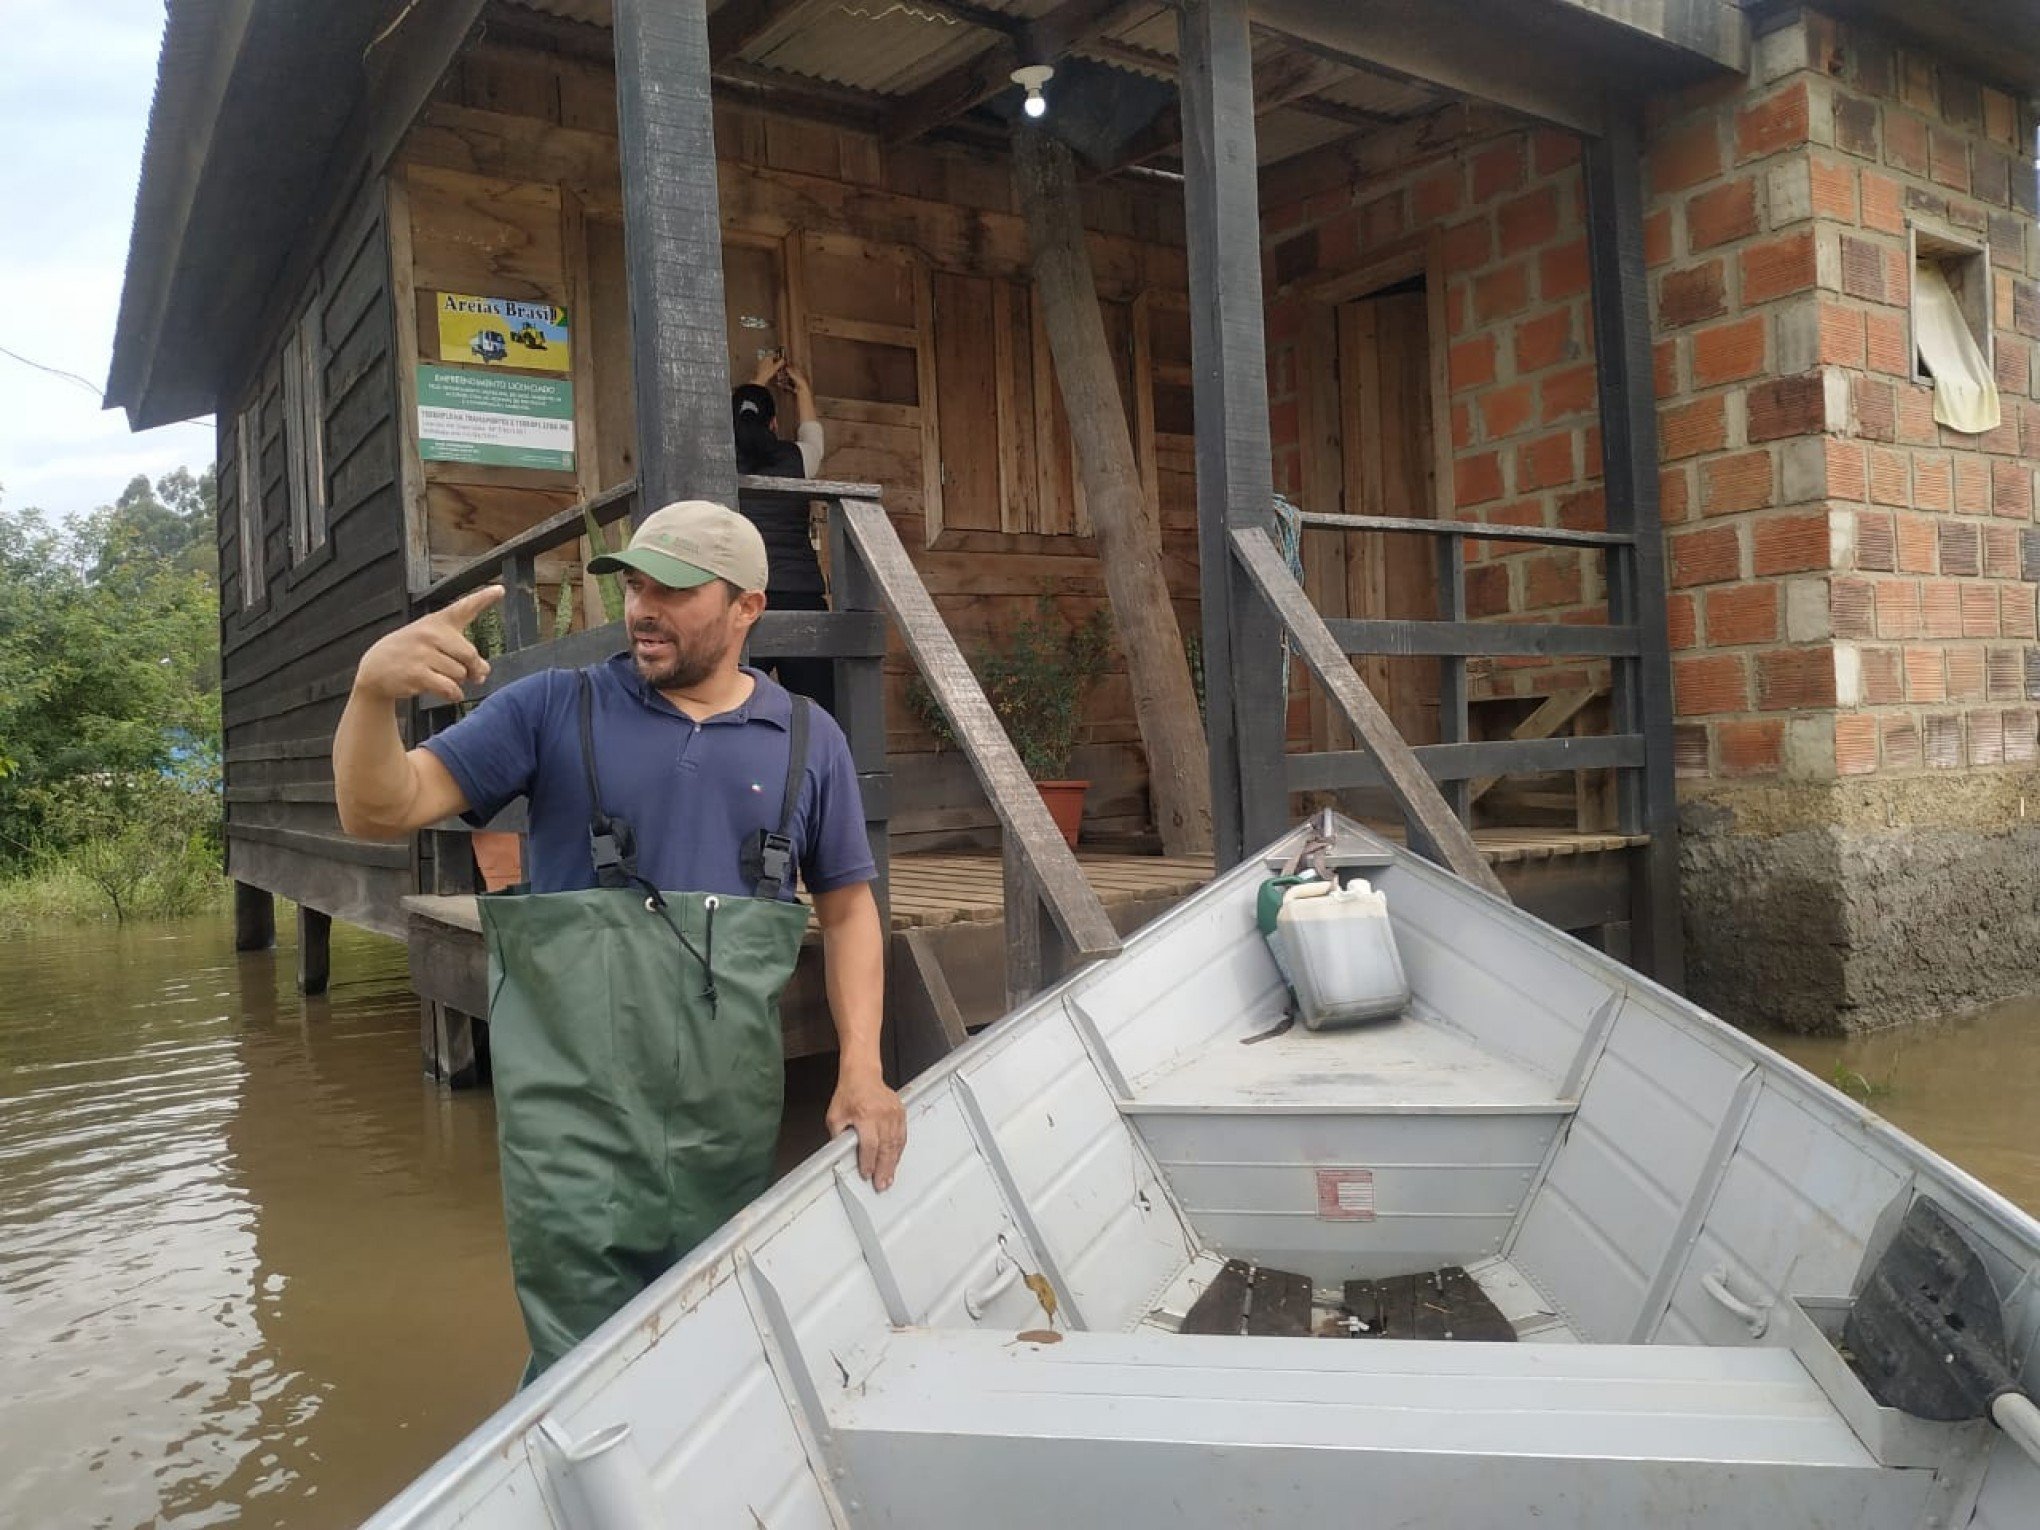 Enchente do Rio dos Sinos deve durar dias, diz Defesa Civil de Sapiranga